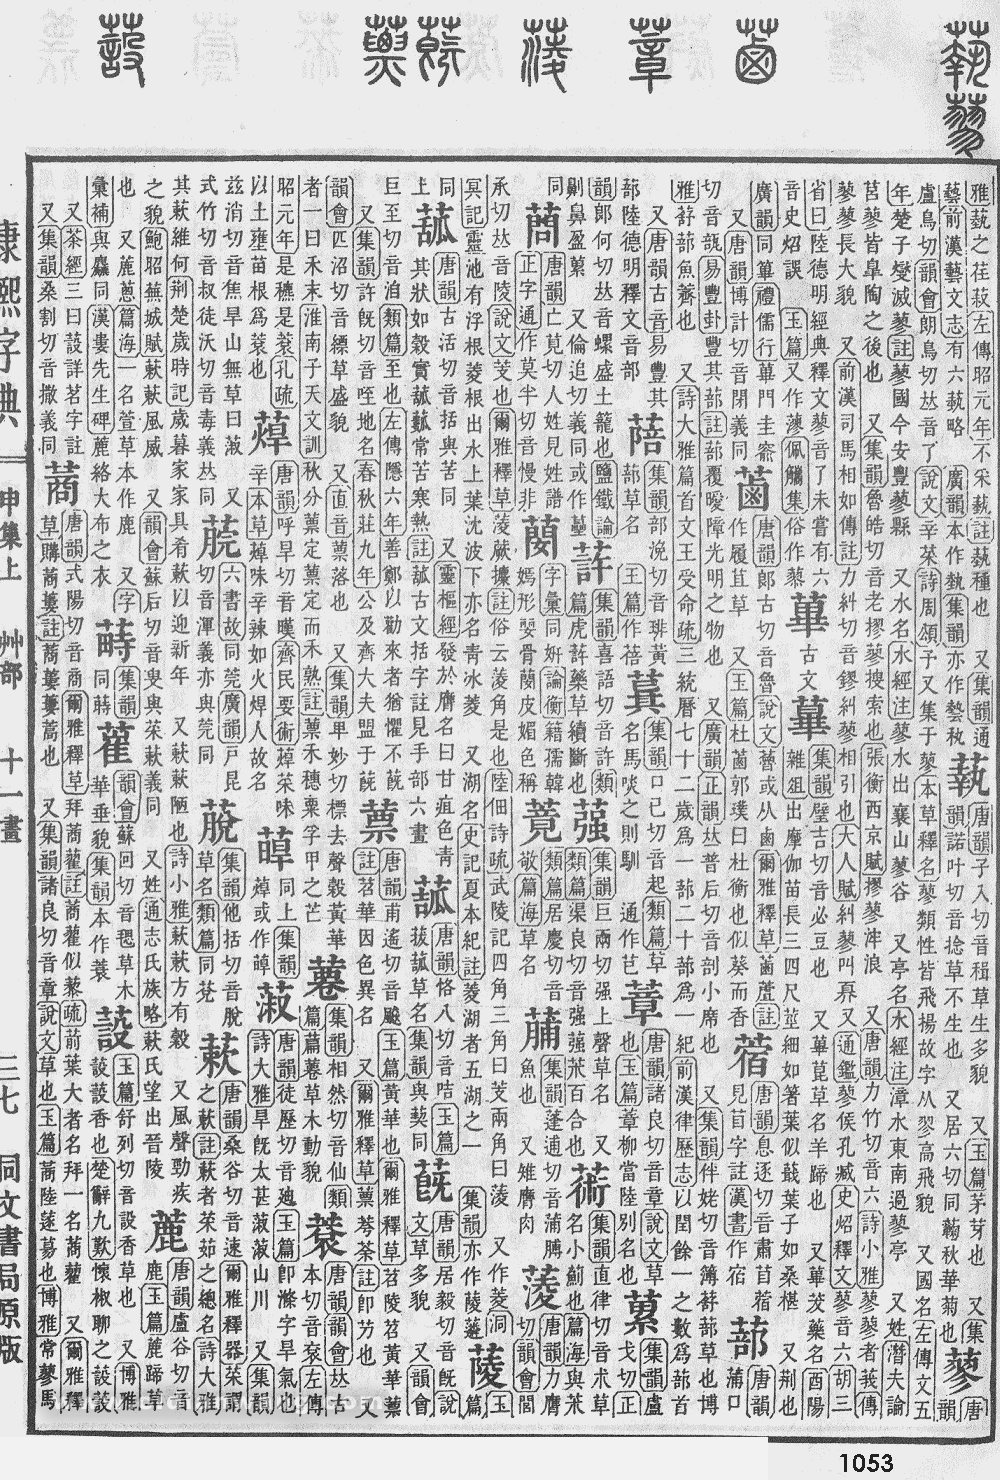 康熙字典掃描版第1053頁